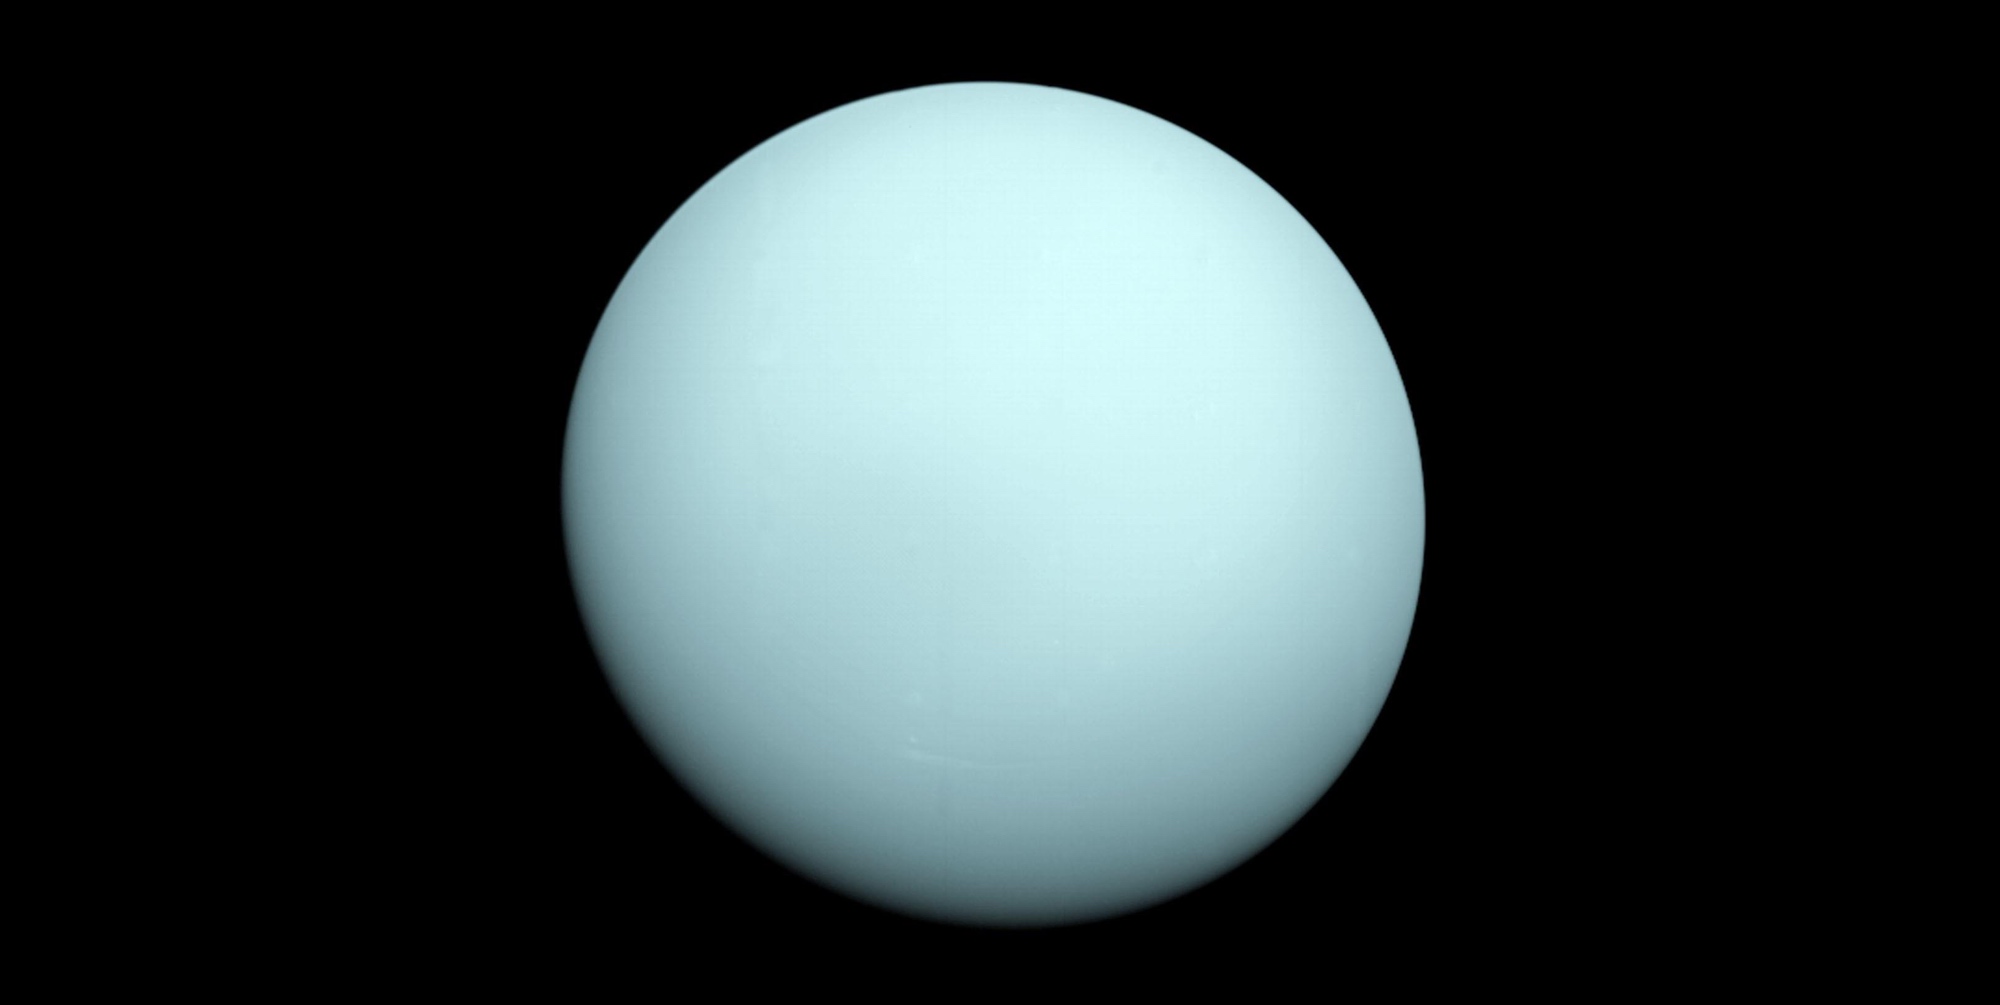 Uranus photographiée par la sonde Voyager 2 en 1986. © Nasa, JPL-Caltech